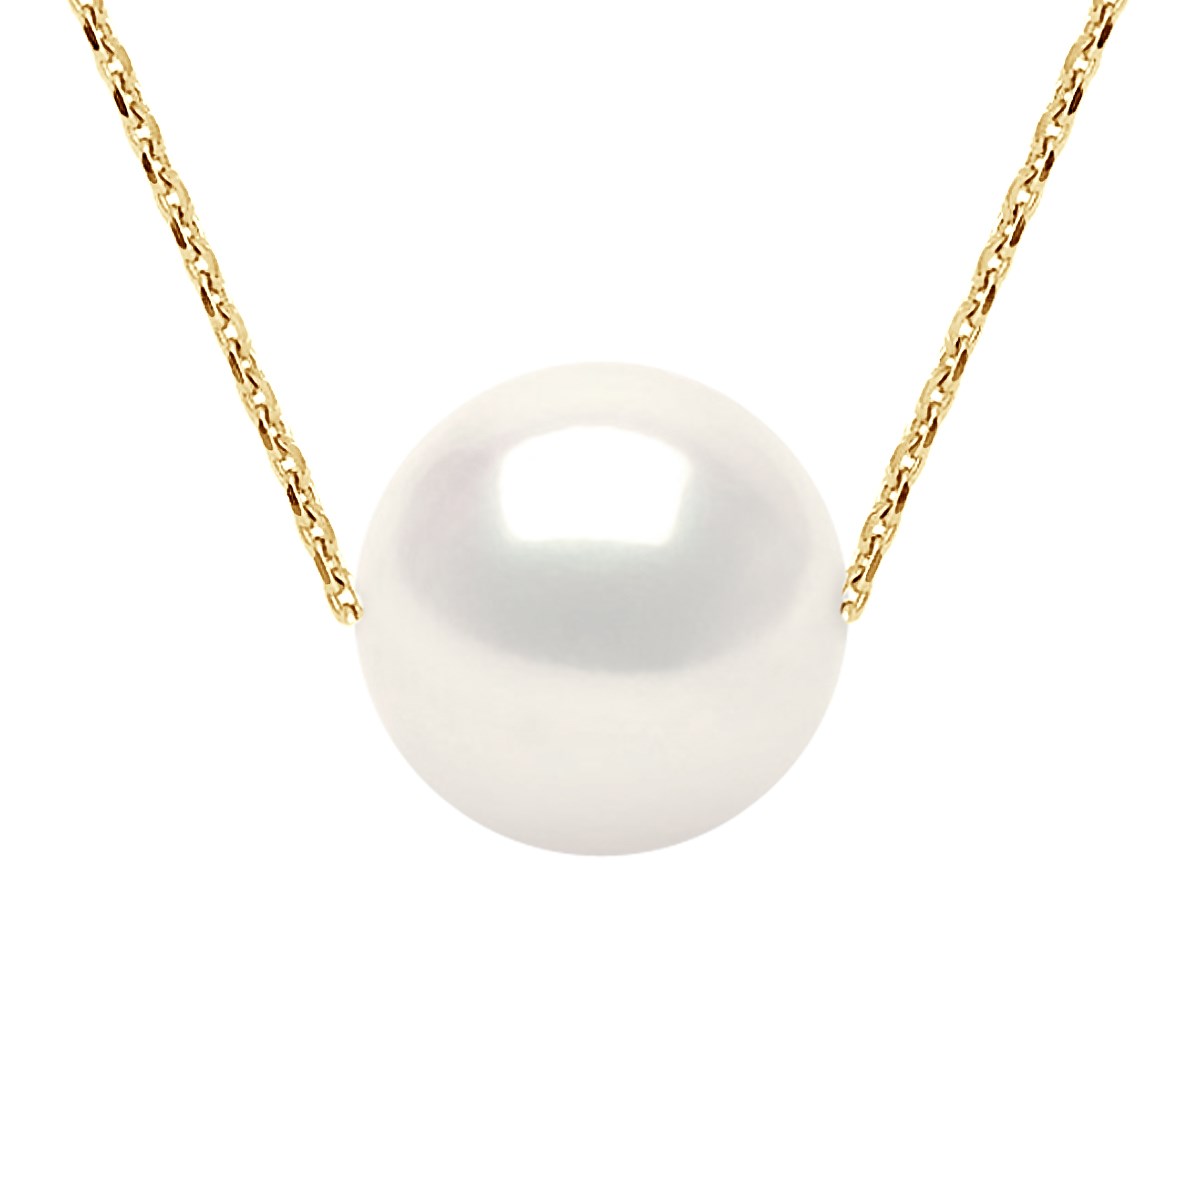 Collier Perle d'Eau Douce Blanche Ronde 11-12 mm Chaîne Forçat Or Jaune 18 Carats